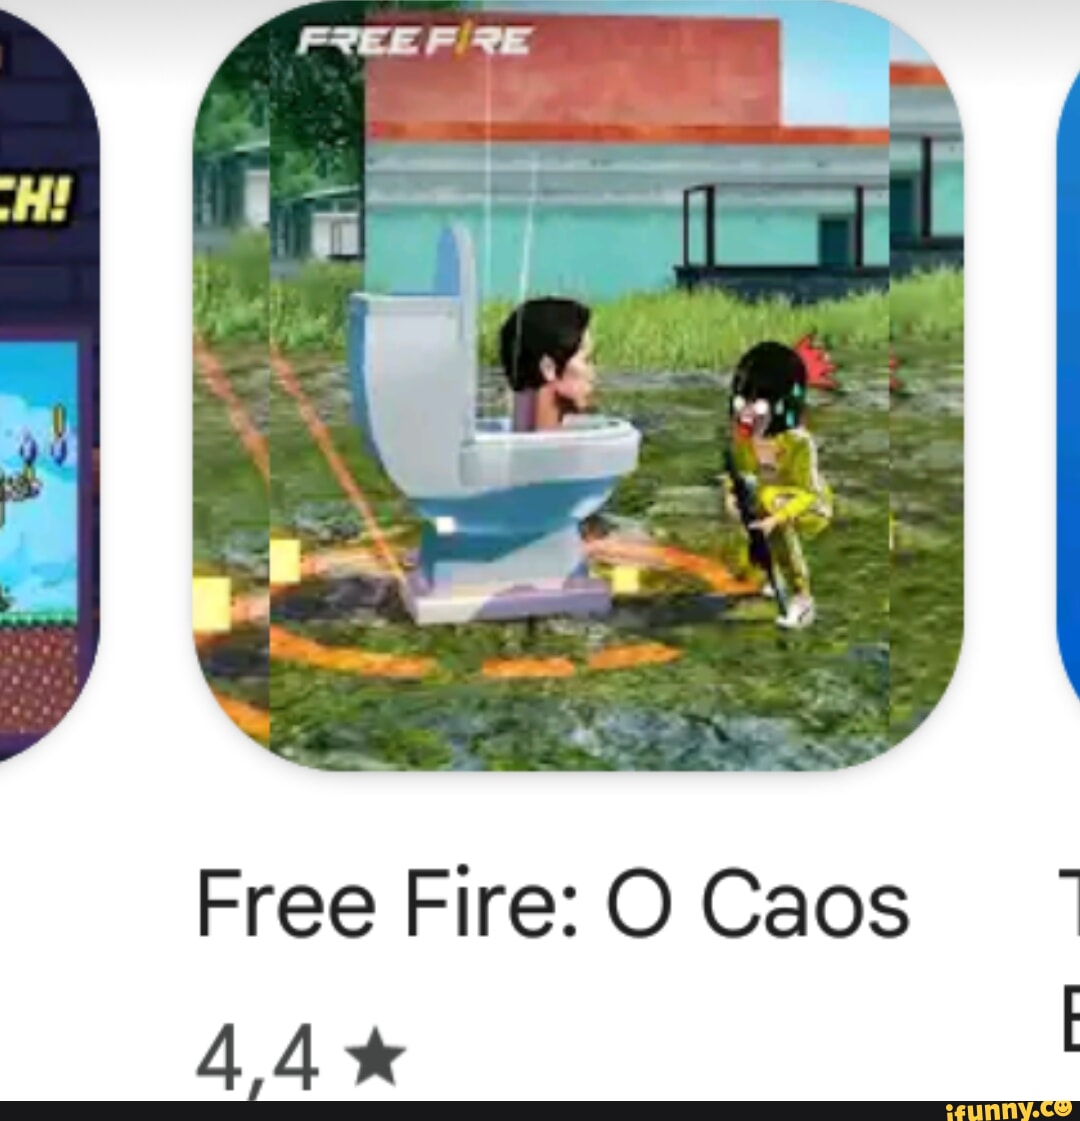 Free Fire: Caos - Aplicaciones en Google Play